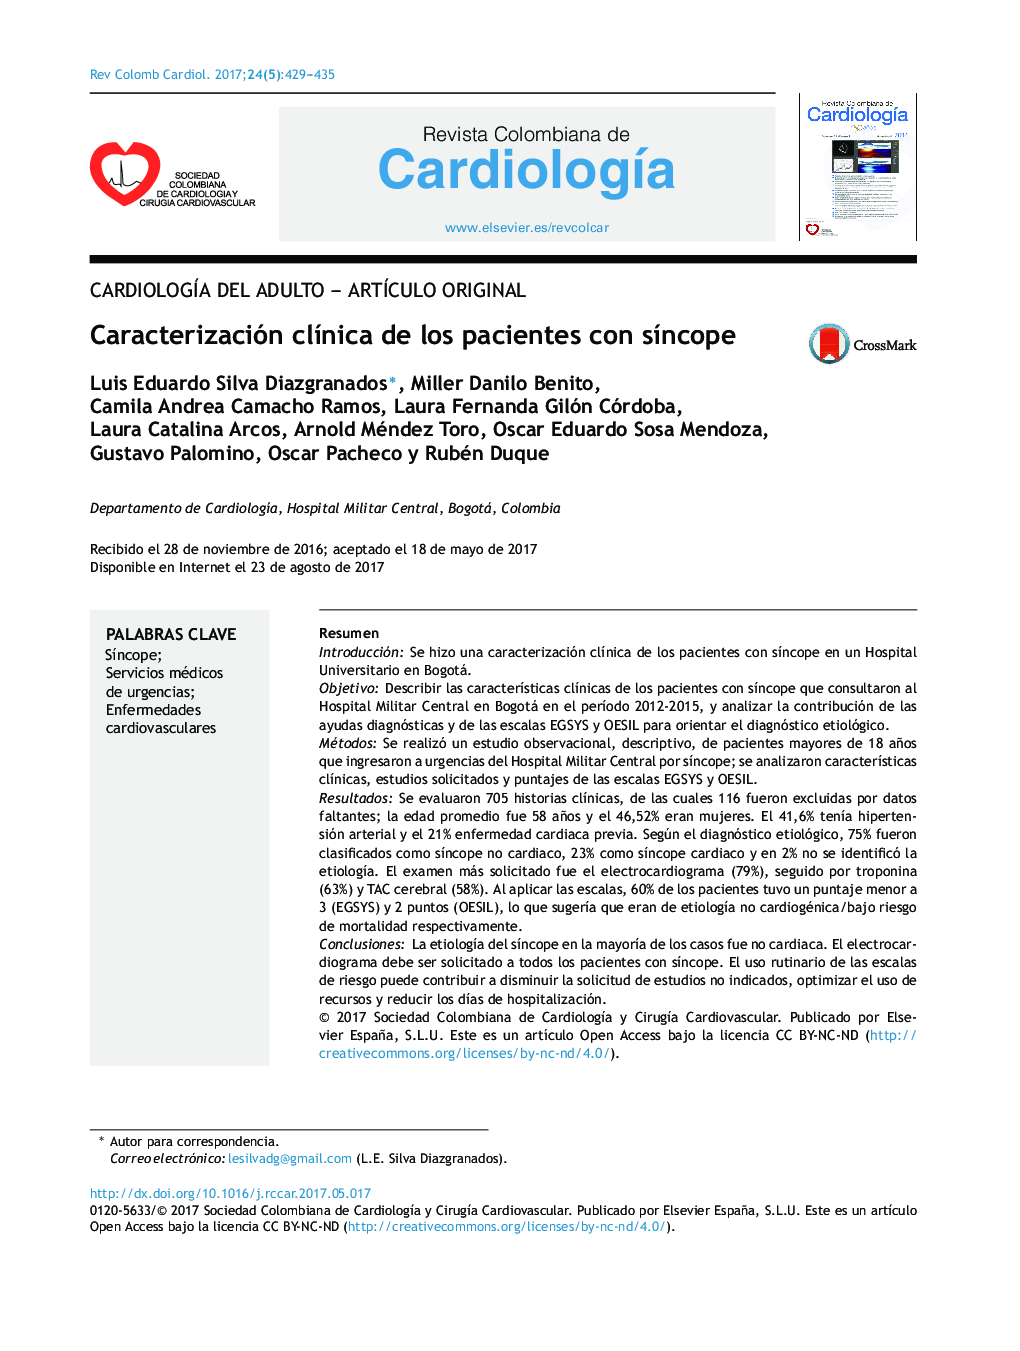 CardiologÃ­a del adulto - ArtÃ­culo originalCaracterización clÃ­nica de los pacientes con sÃ­ncopeClinical profile of patients with syncope